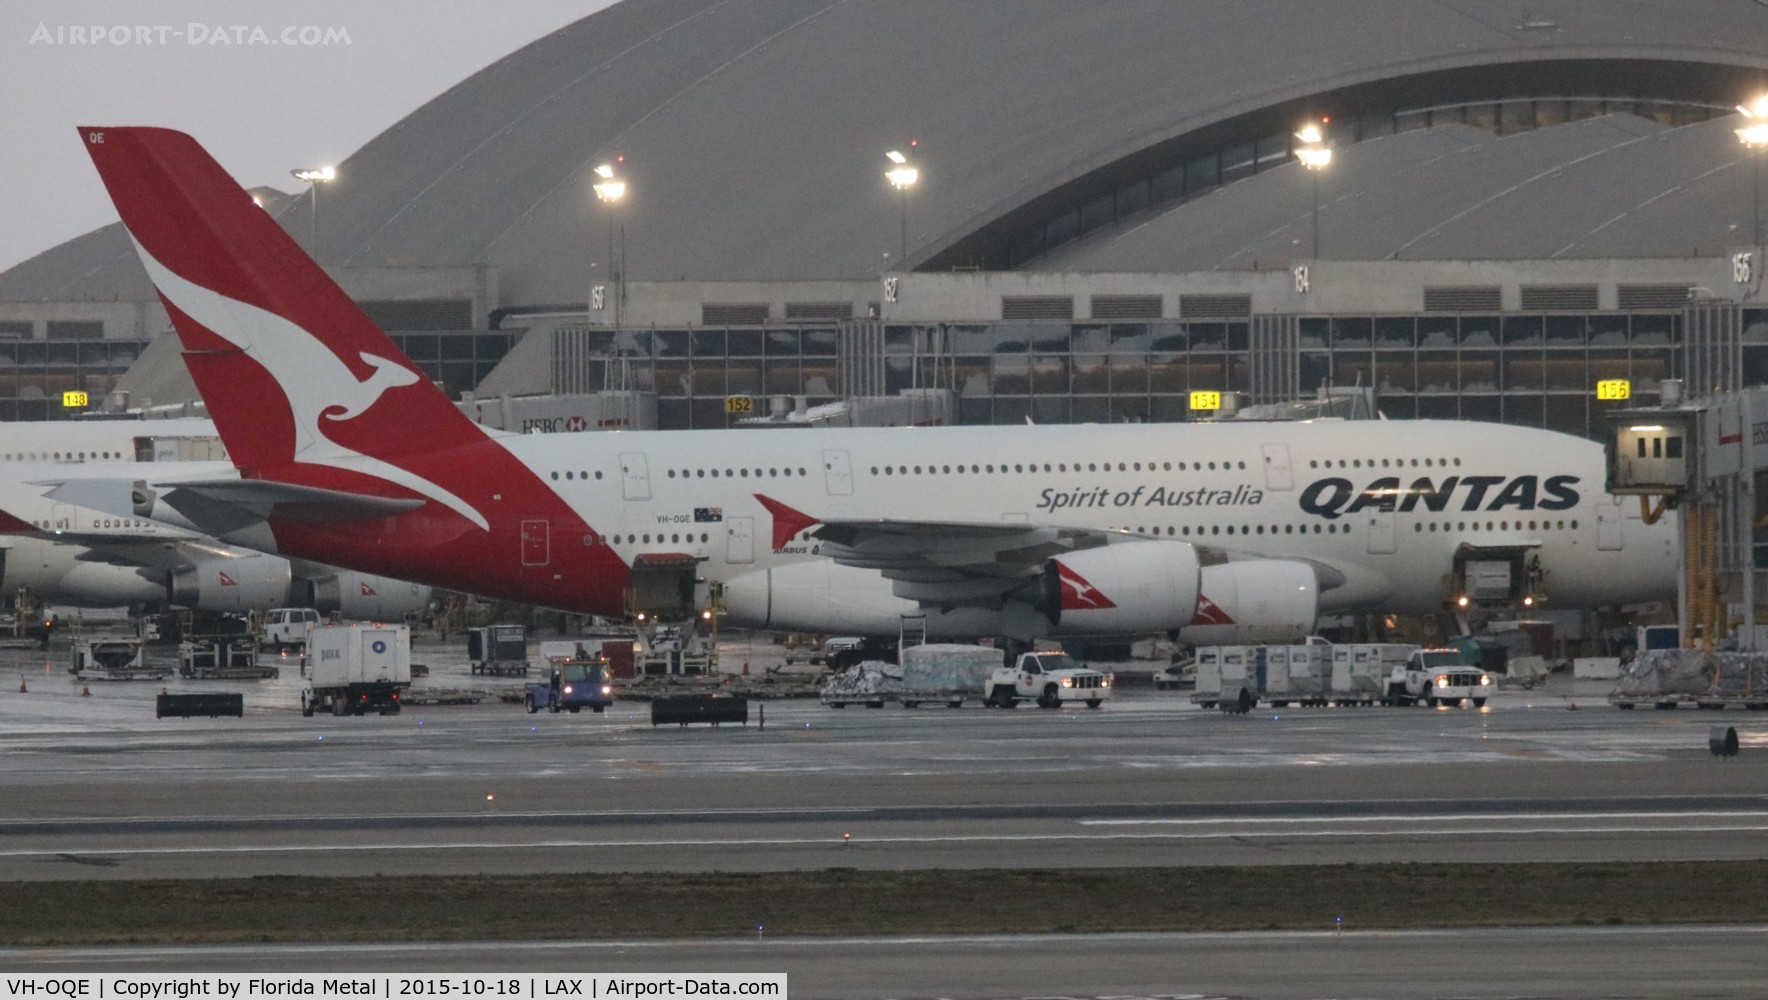 VH-OQE, 2009 Airbus A380-842 C/N 027, Qantas A380